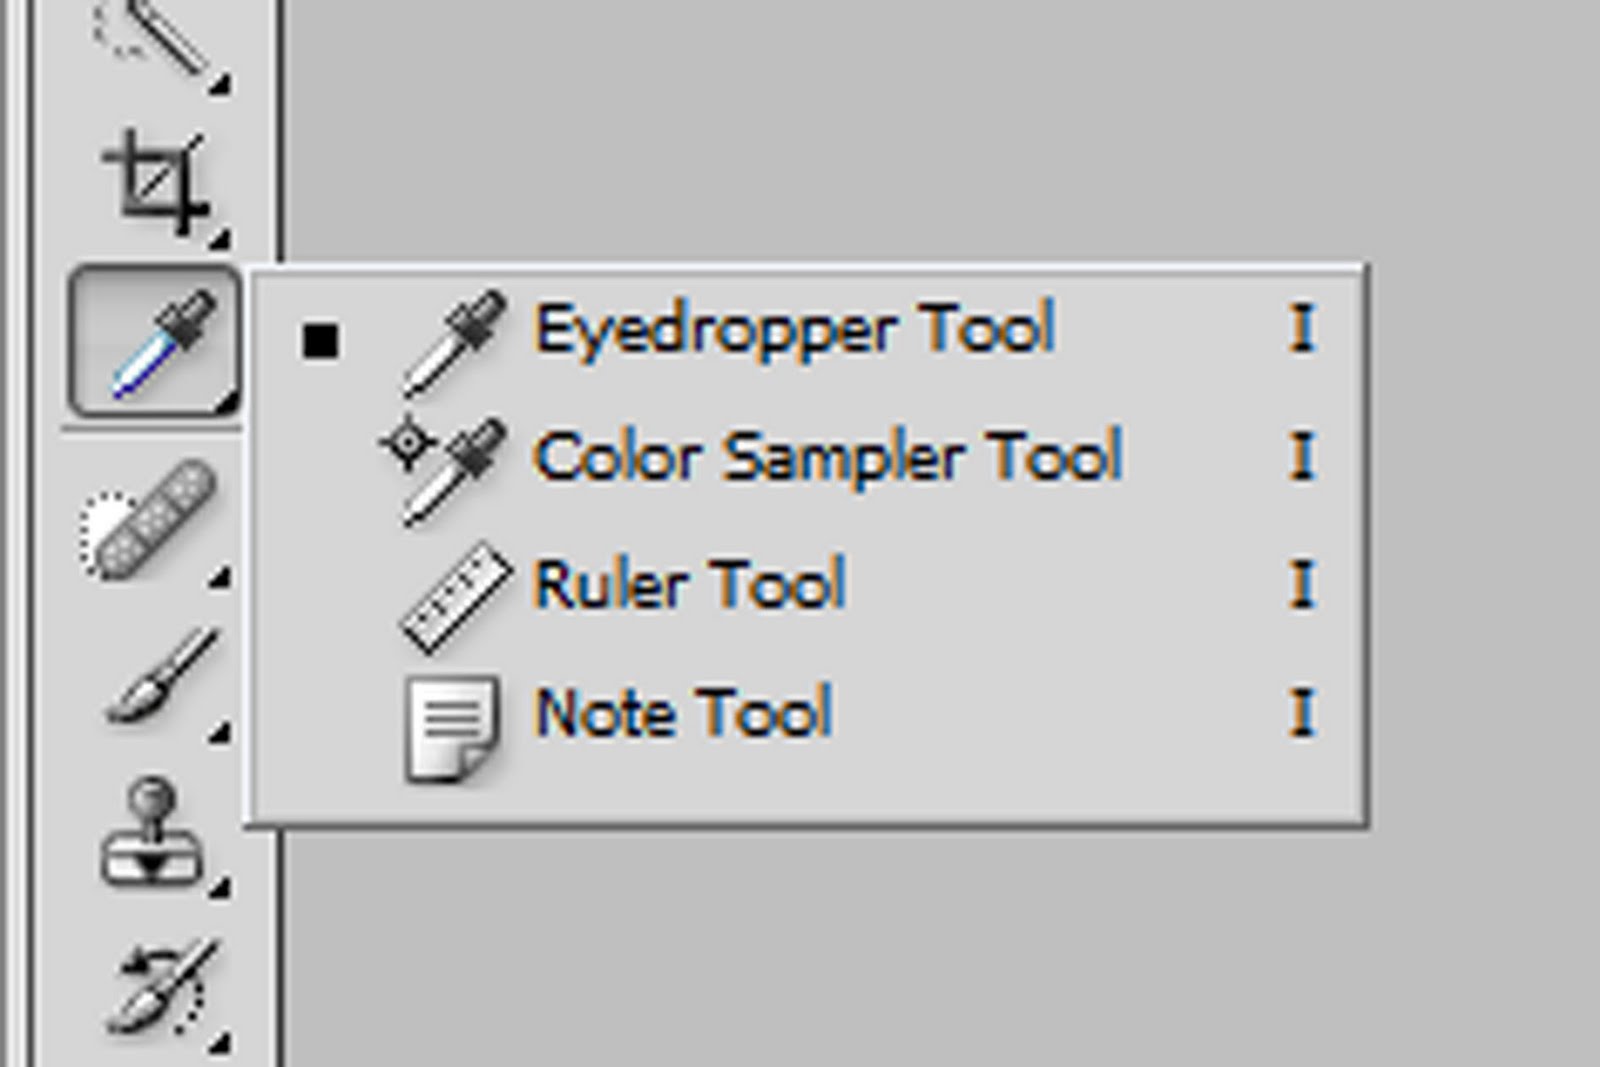 Sample tool. Назначение инструмента eyedropper. Sampling Tool. Devtools Rules like Photoshop.